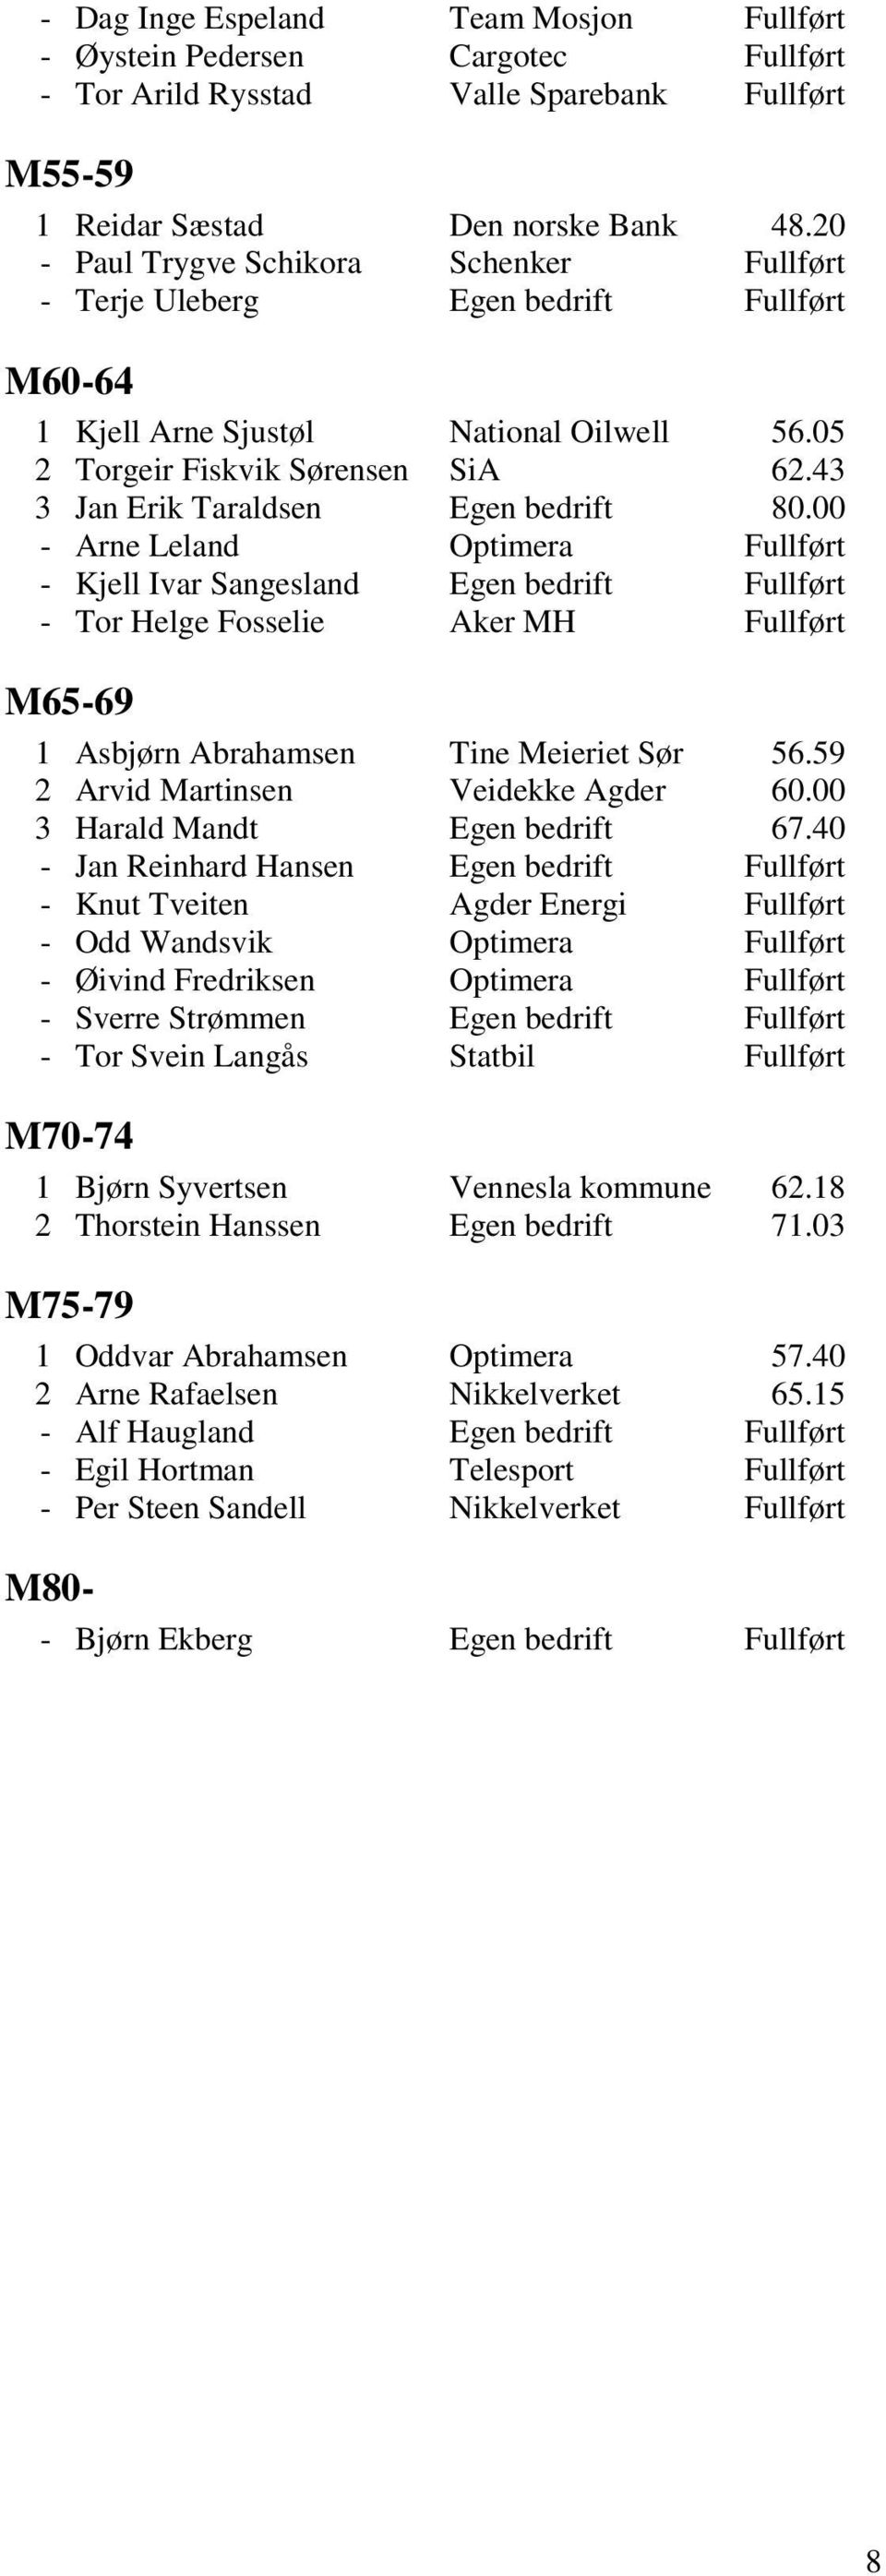 43 3 Jan Erik Taraldsen Egen bedrift 80.